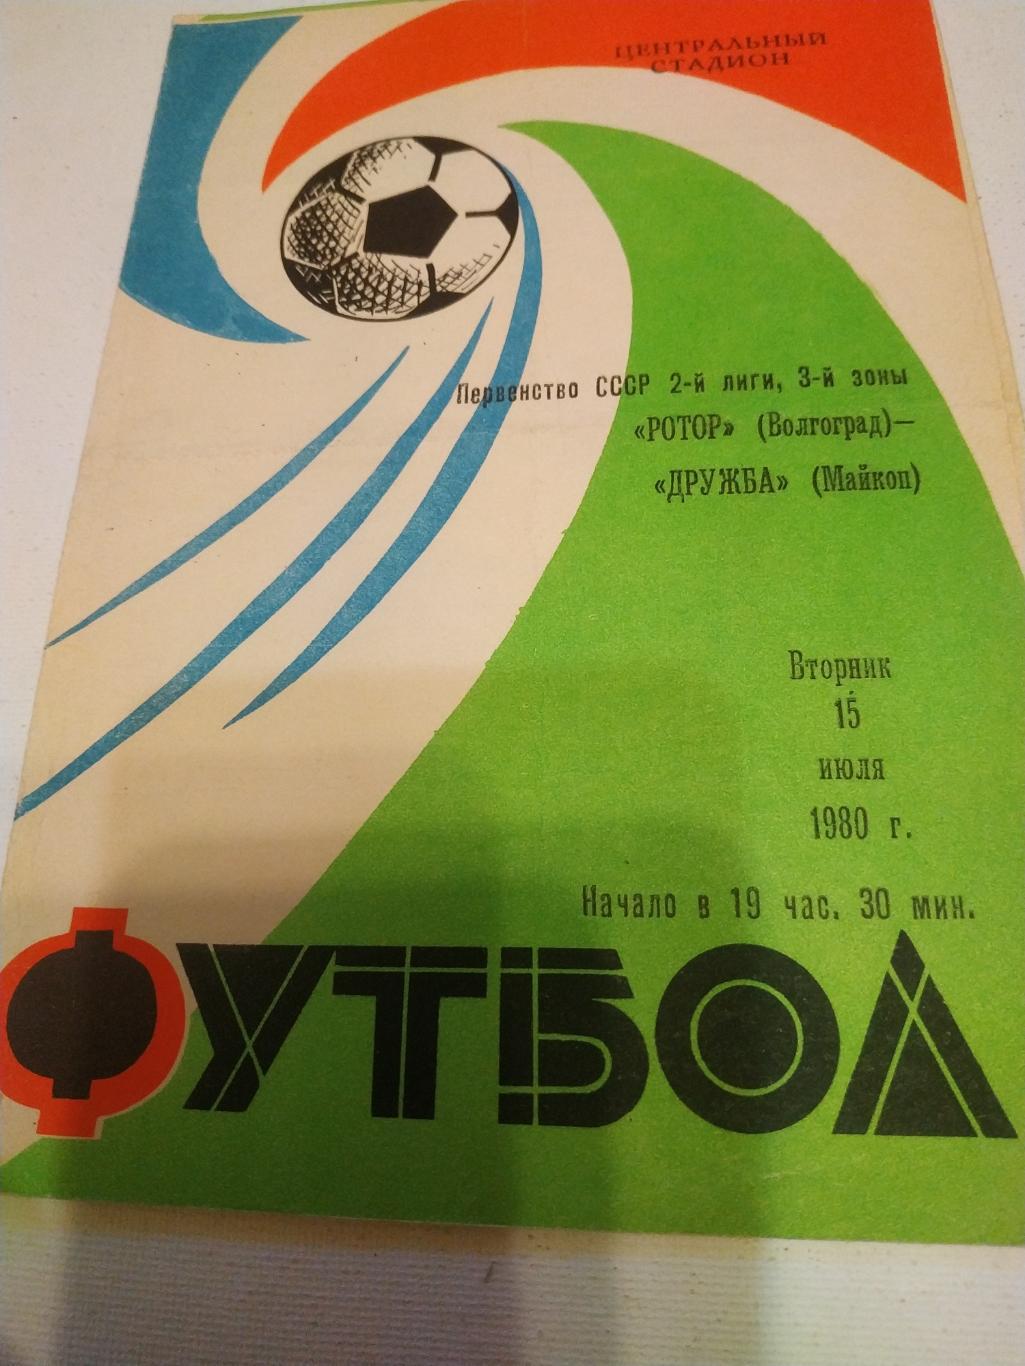 Ротор Волгоград - Дружба Майкоп. 1980